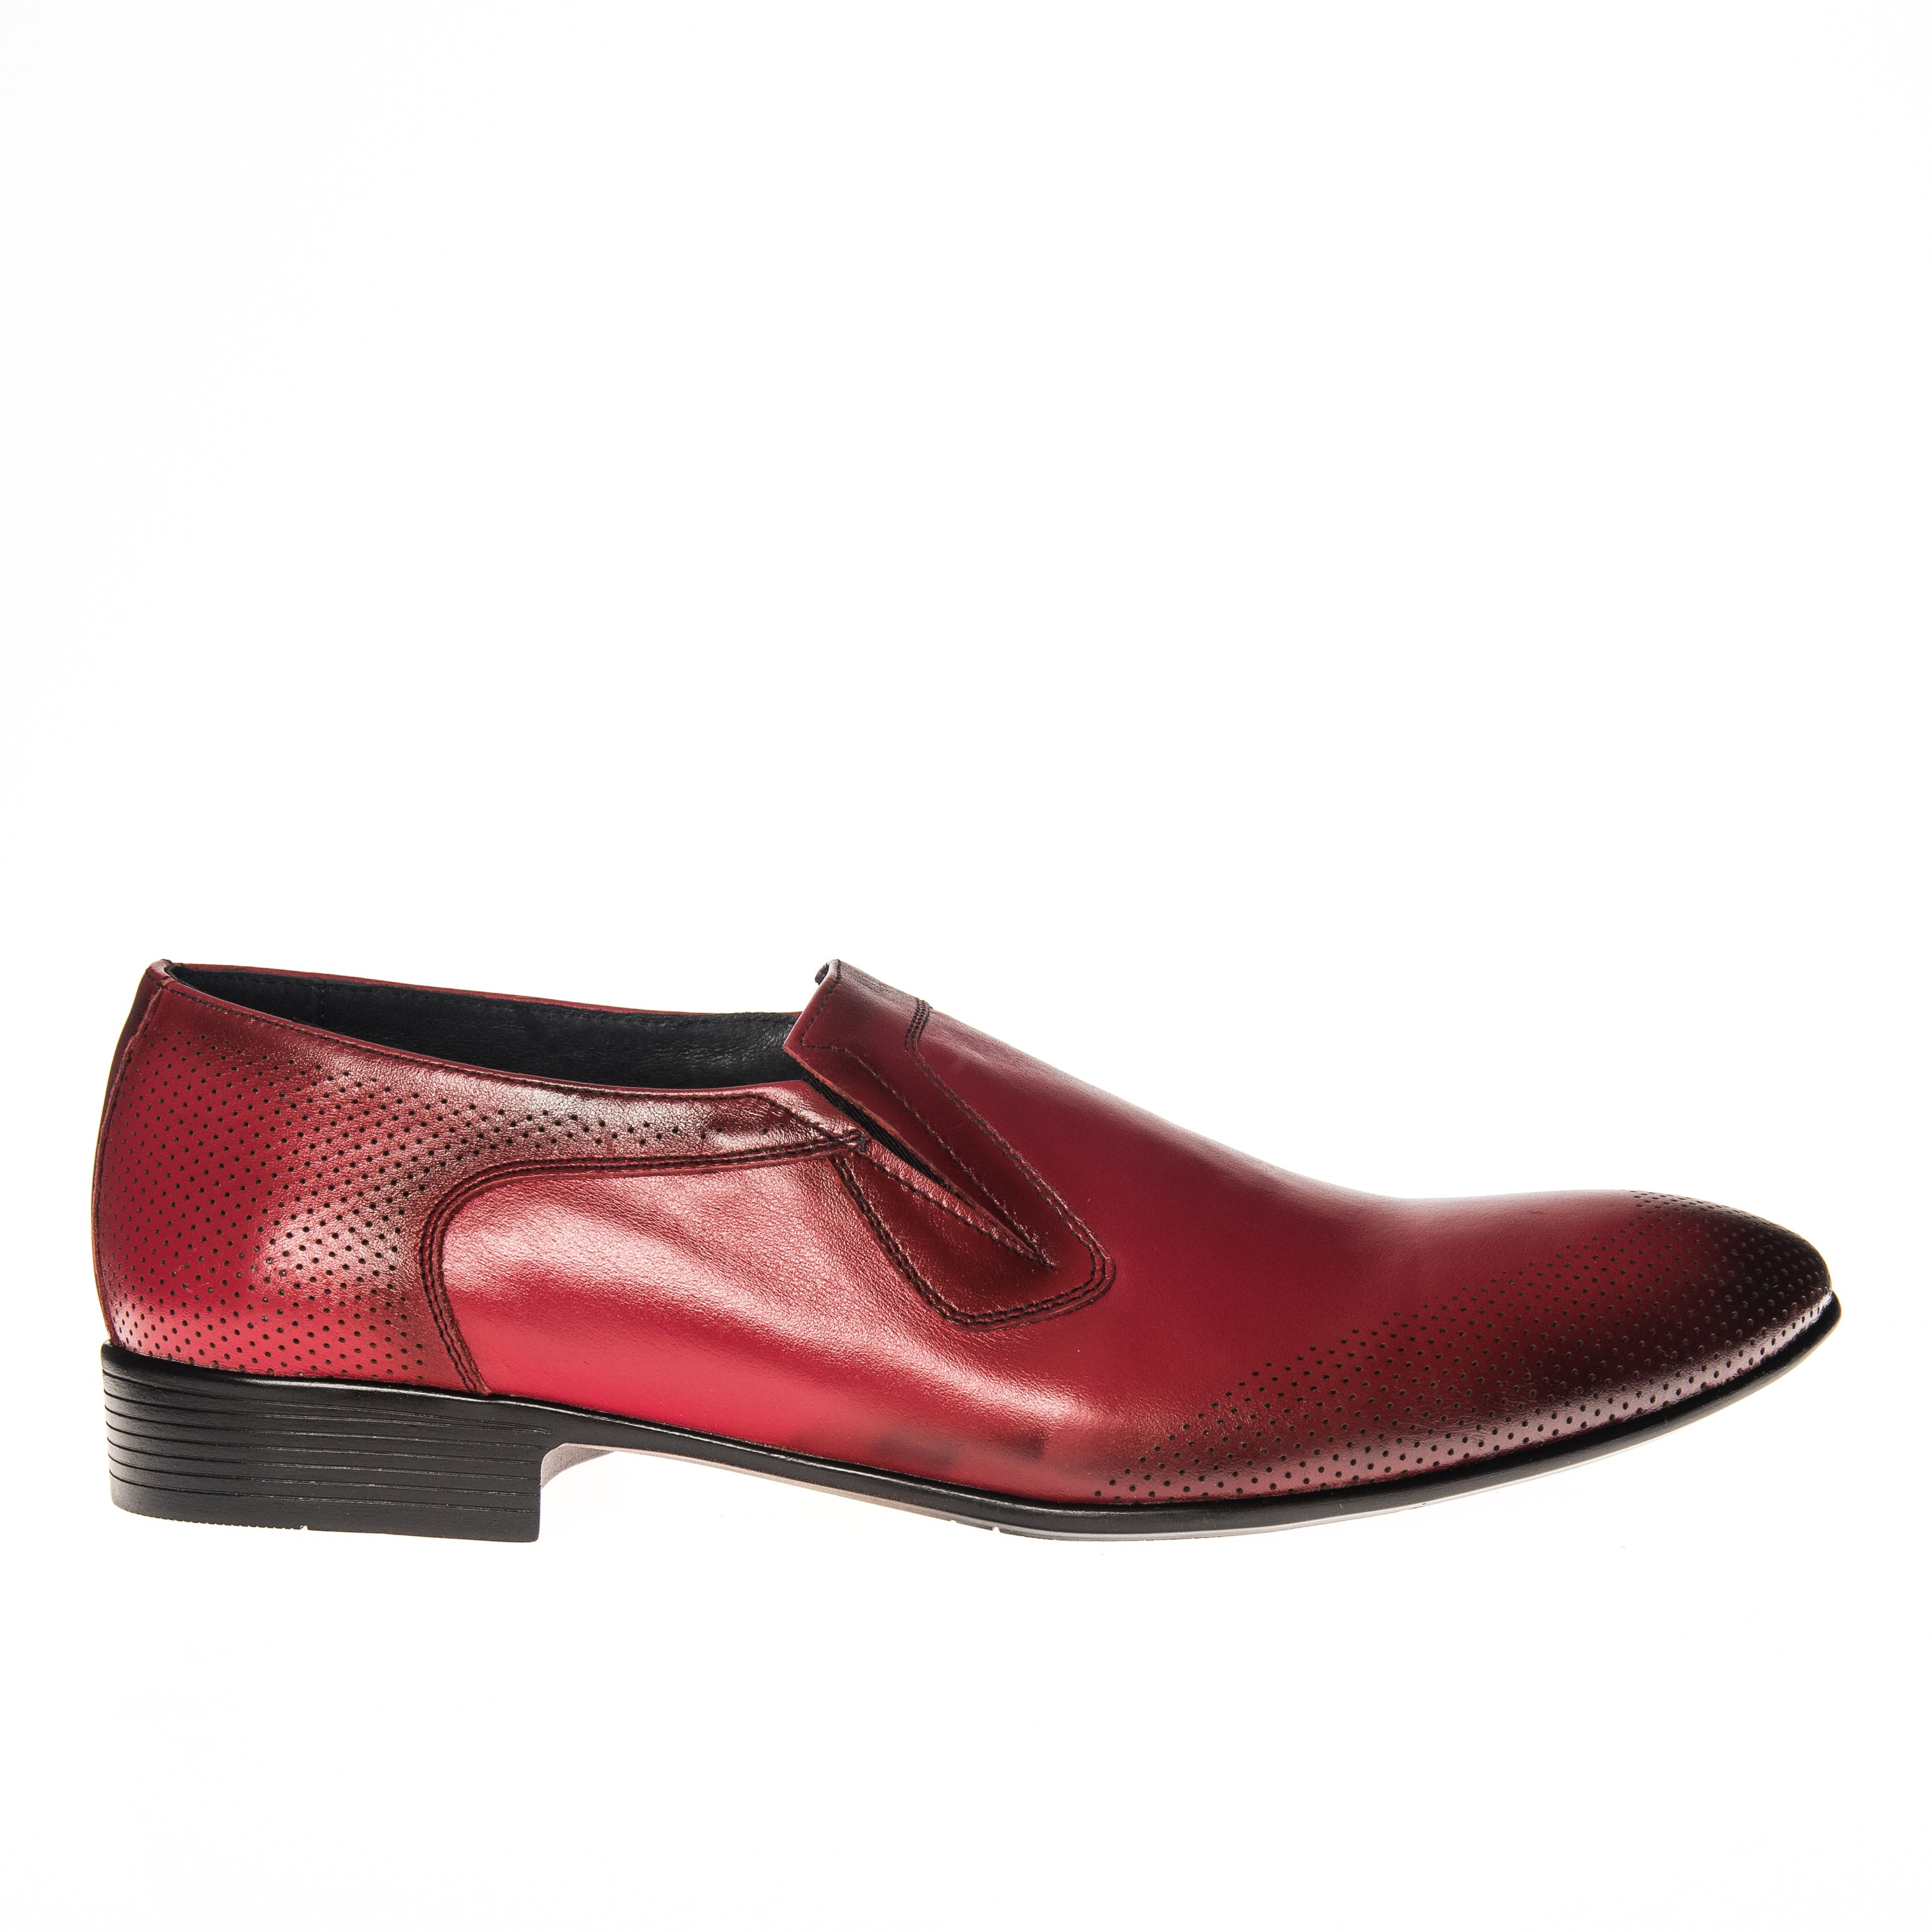 Pantofi barbati din piele naturala - Rosu Perie - E 401 RP